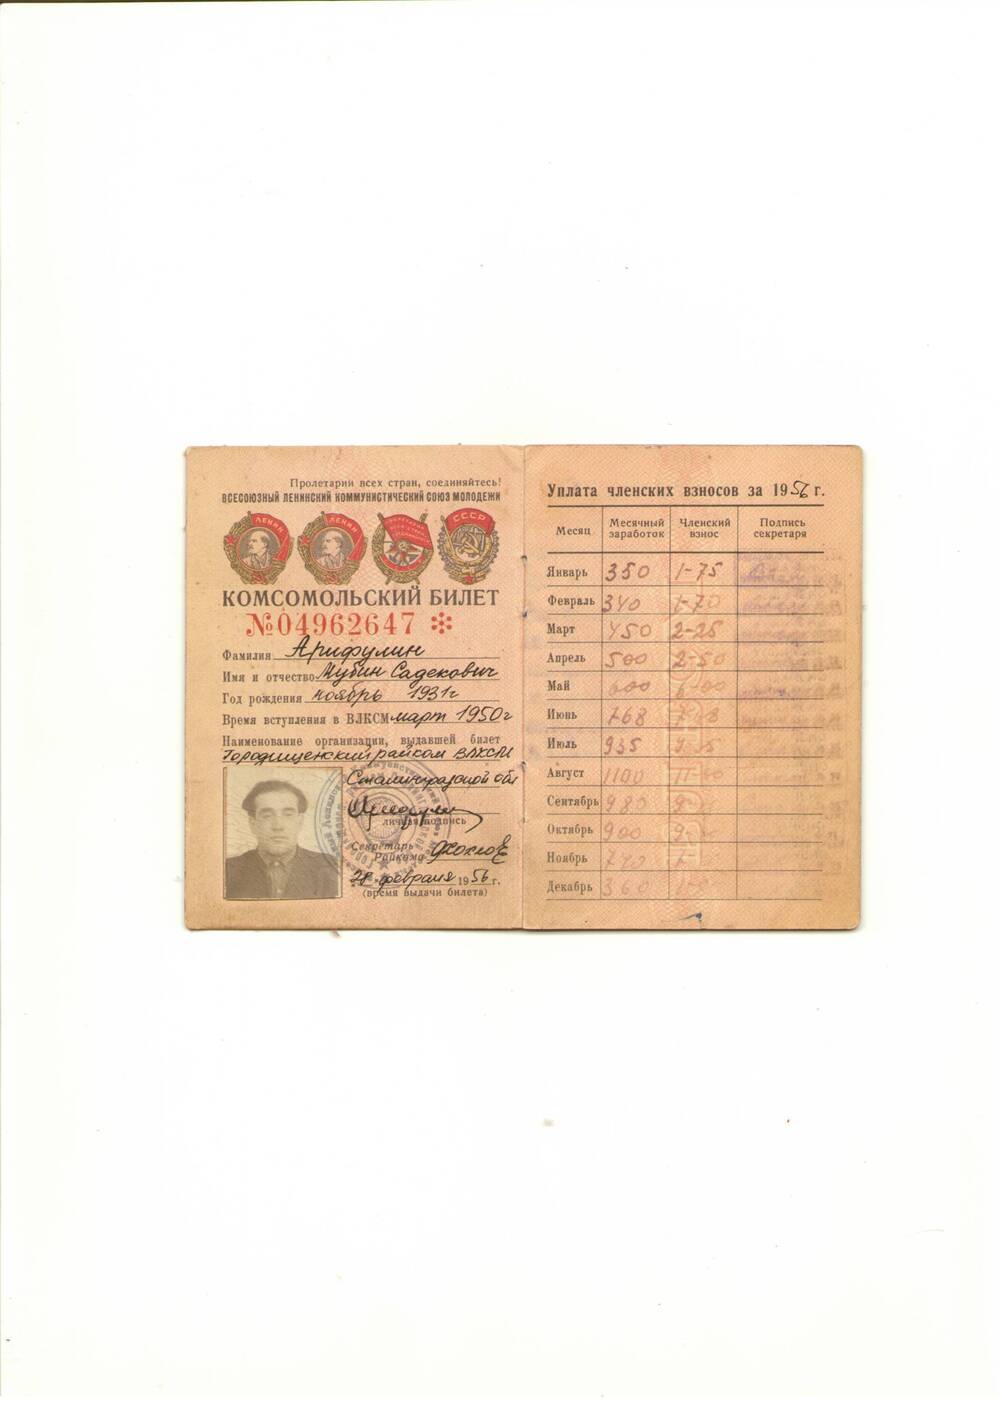 Комсомольский билет №04962647 Арифулина М. С., Сталинградская область, 28.02.1956